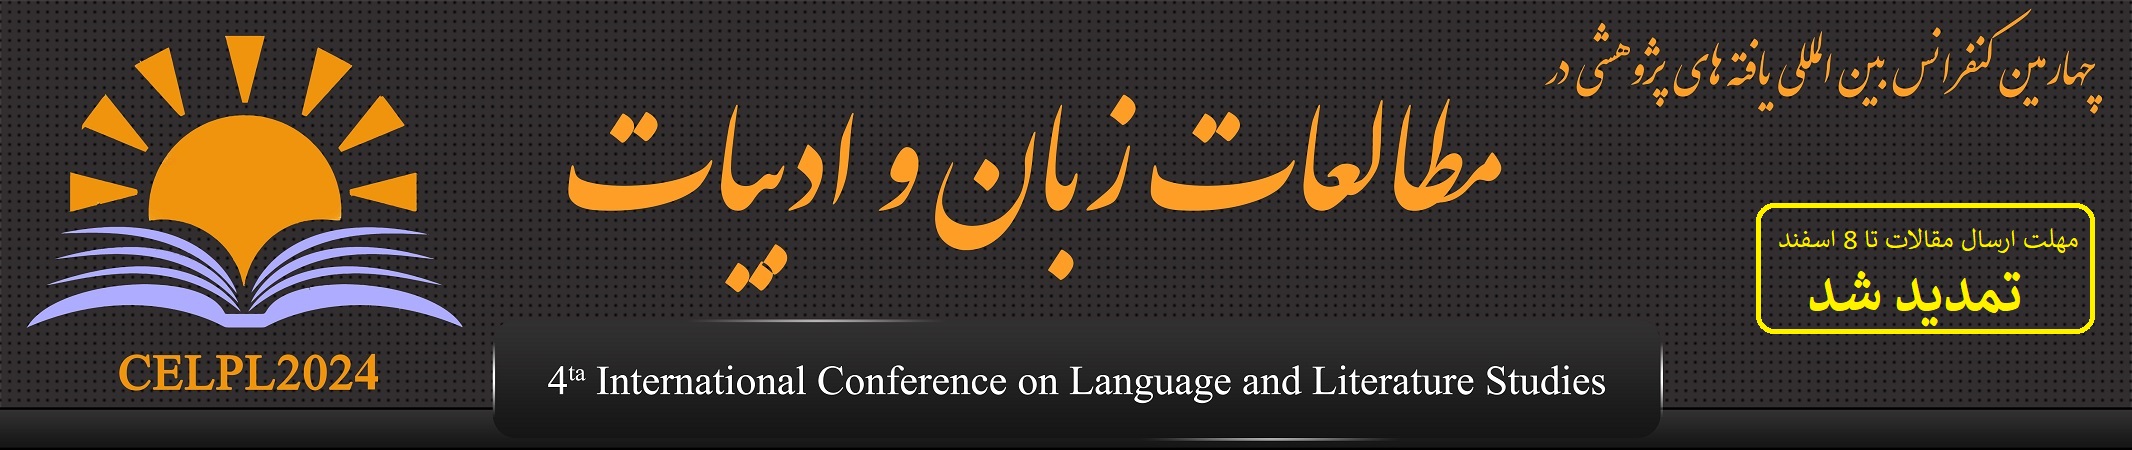 چهارمین کنفرانس بین المللی مطالعات زبان و ادبیات